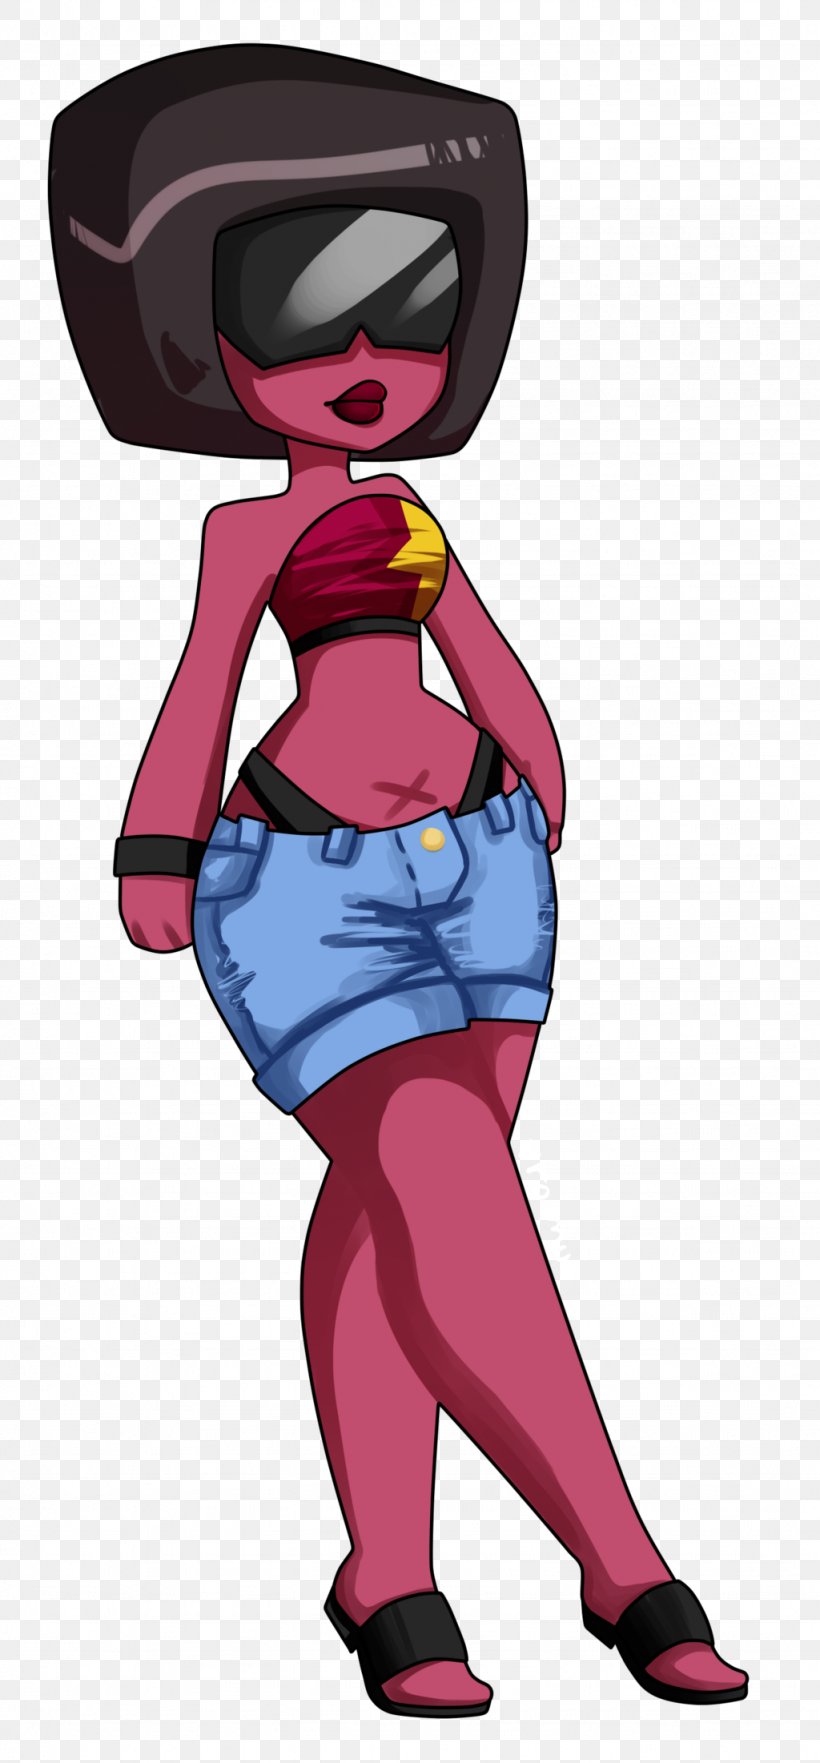 Pink M Superhero Headgear Clip Art, PNG, 1024x2202px, Pink M, Art, Cartoon, Fictional Character, Headgear Download Free